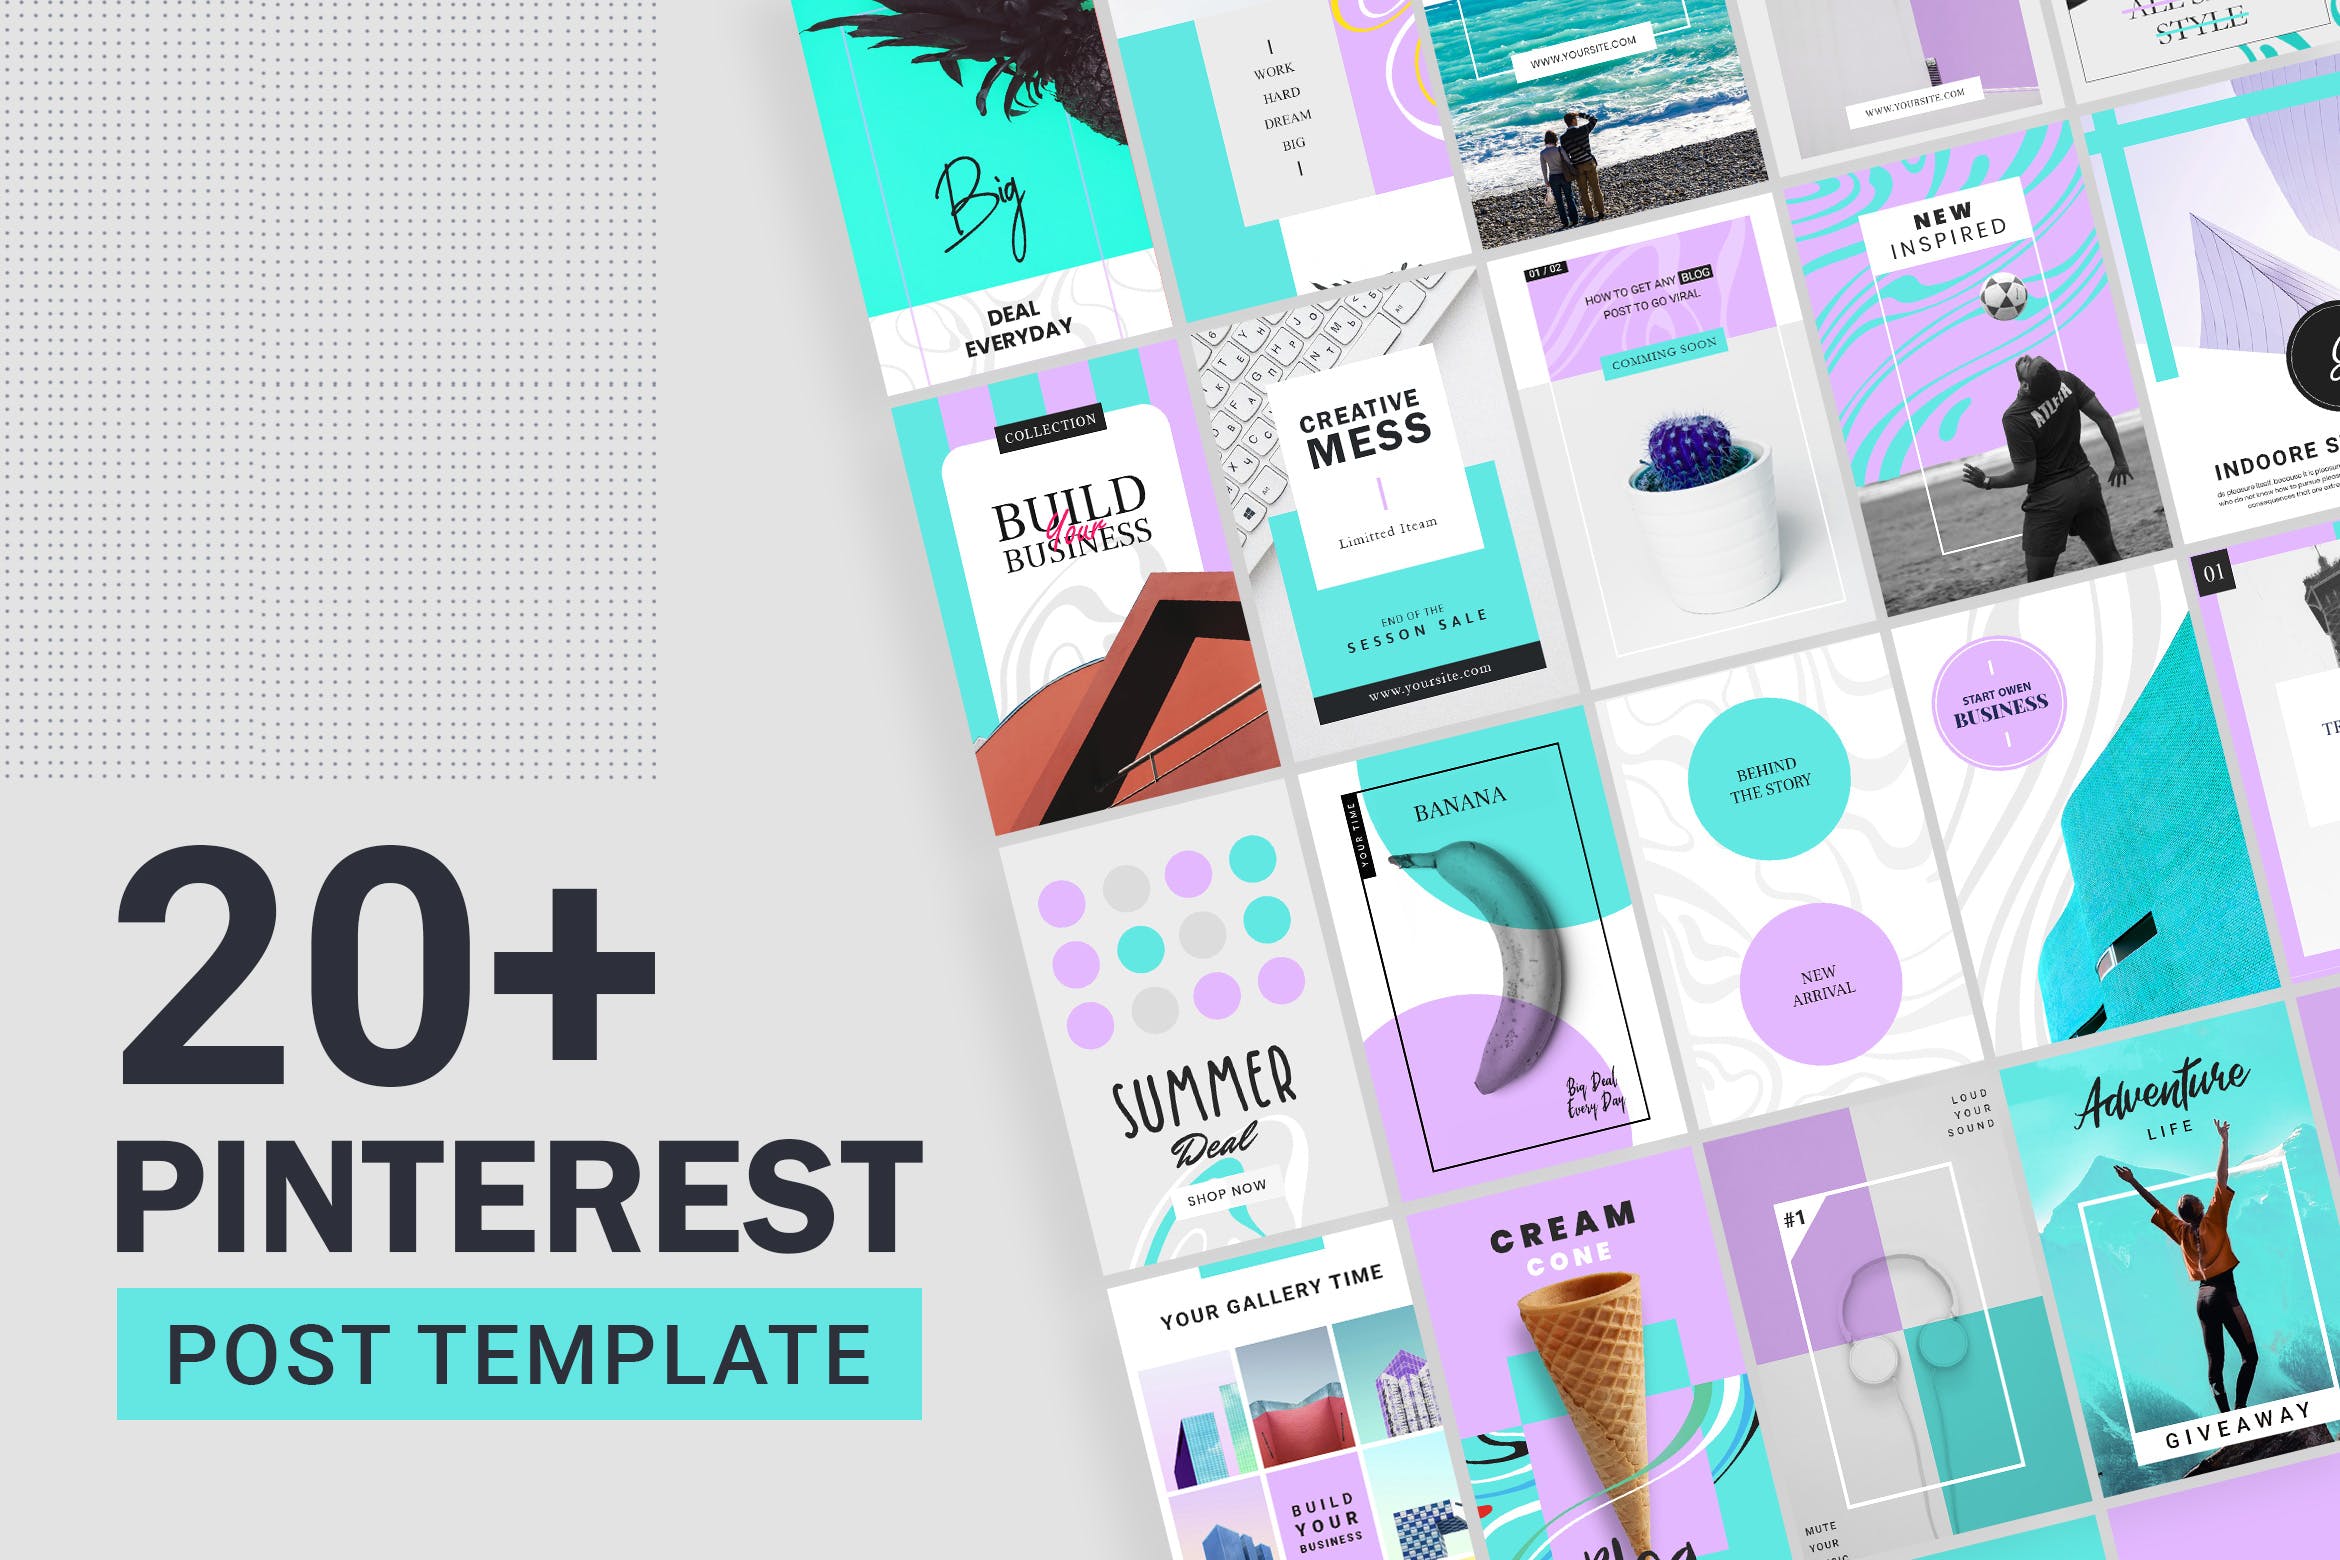 20+Pinterest社交促销广告设计模板第一素材精选素材包 Pinterest Post Templates插图